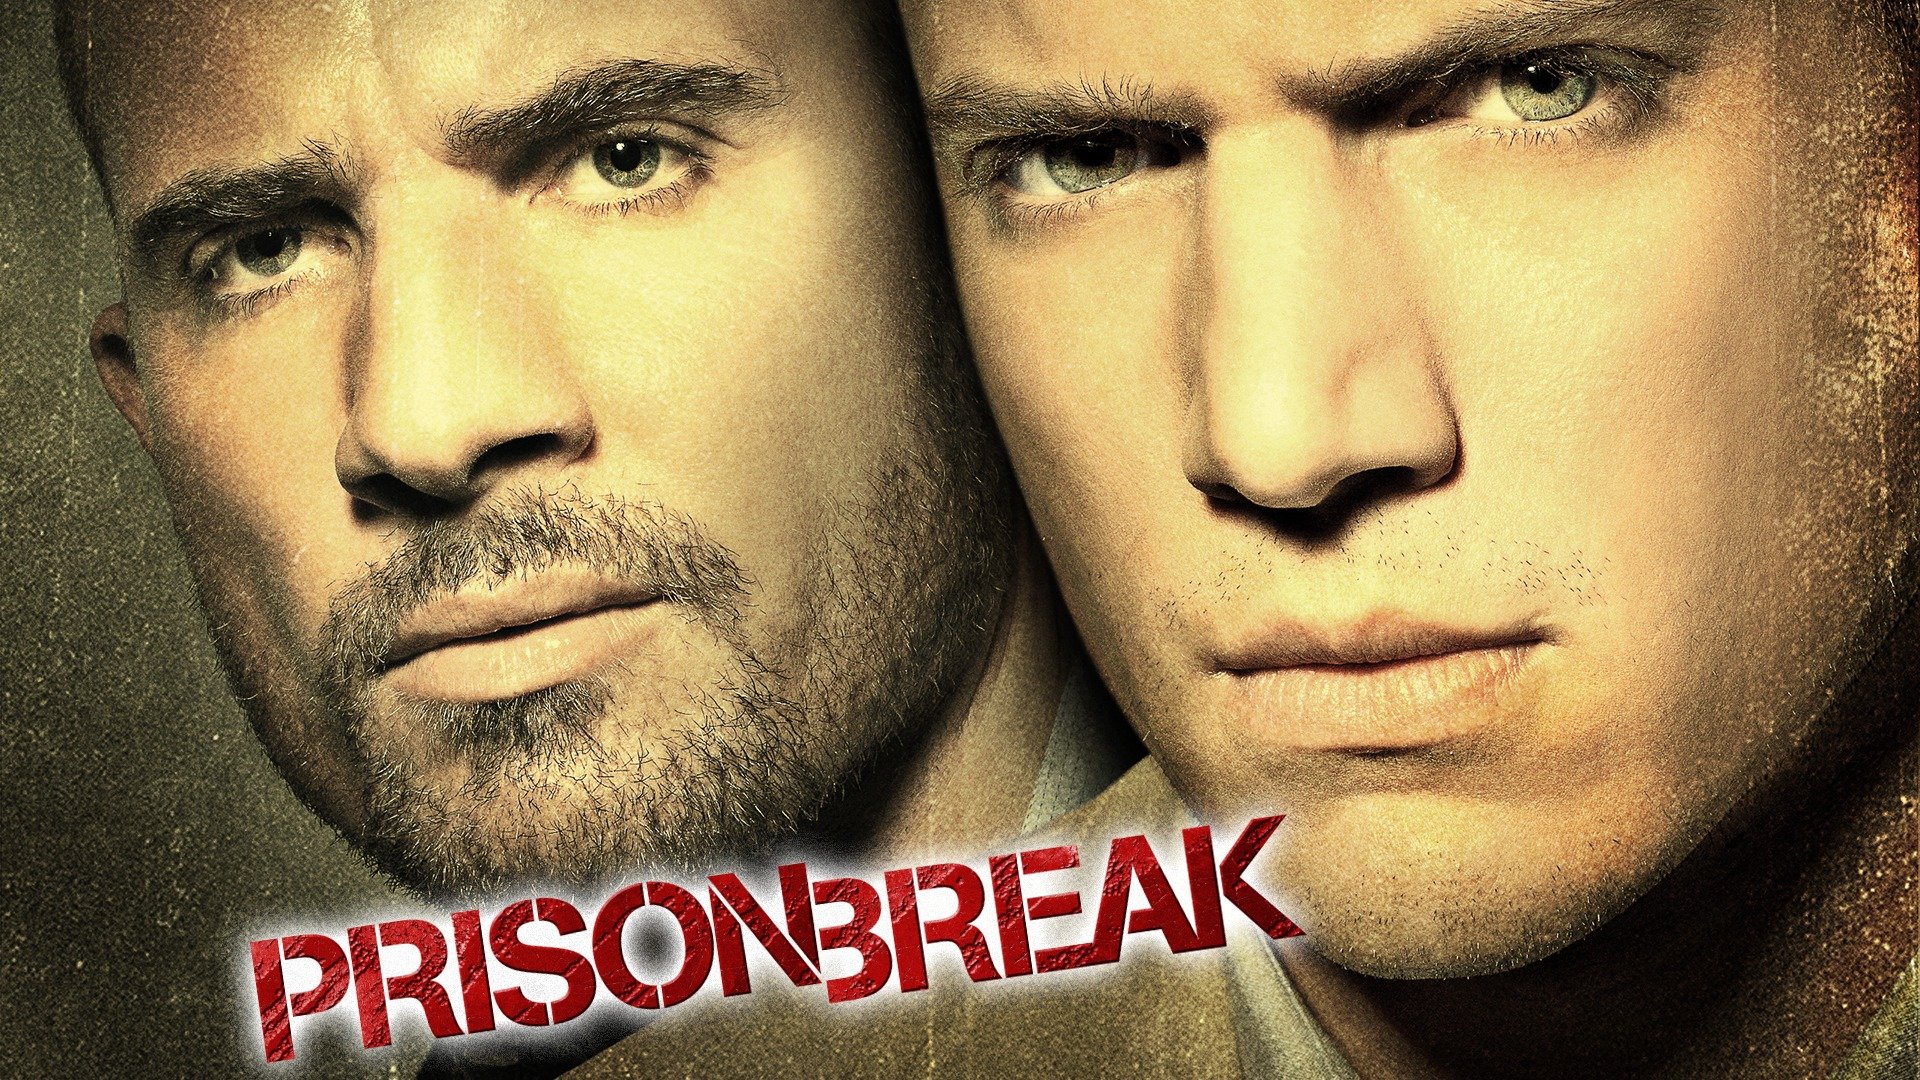 watch prison break season 1 online free dailymotion